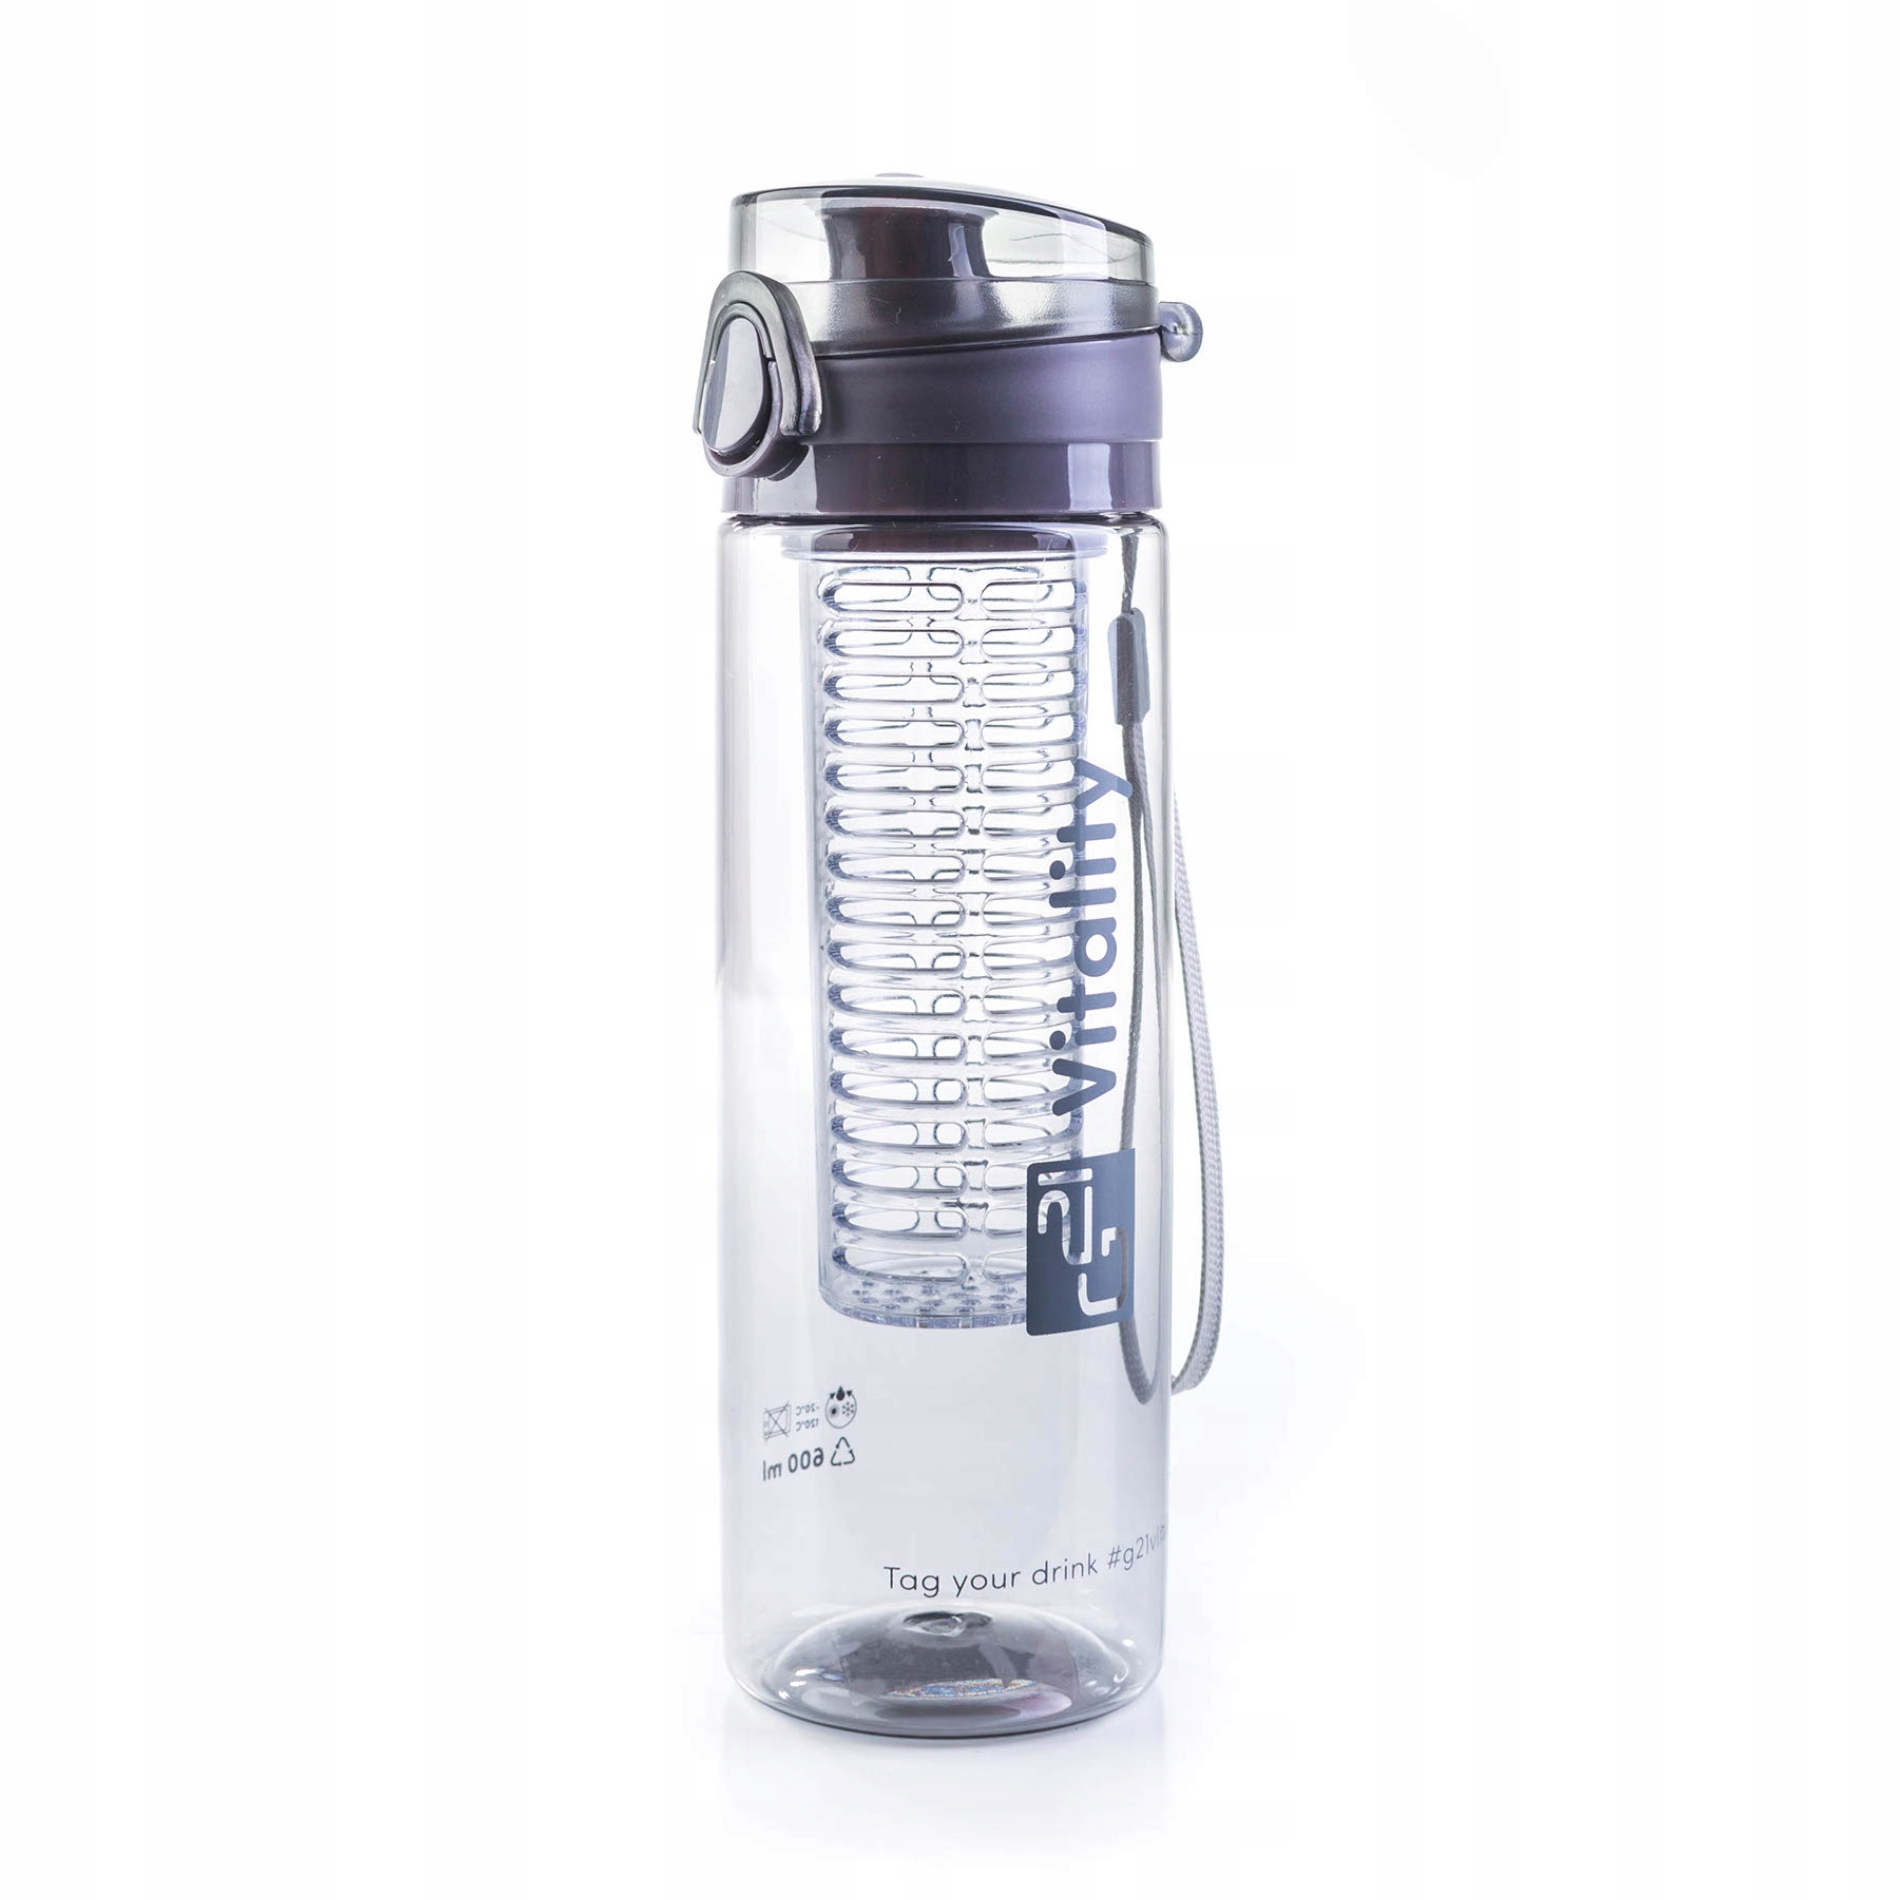 Бутылка для воды сталь. Купер Вижн бутылка для воды. Фитнес бутылка Cooper Vision. Cooper Vision бутылка для воды с контейнером. Бутылка для воды спортивная 600 мл.